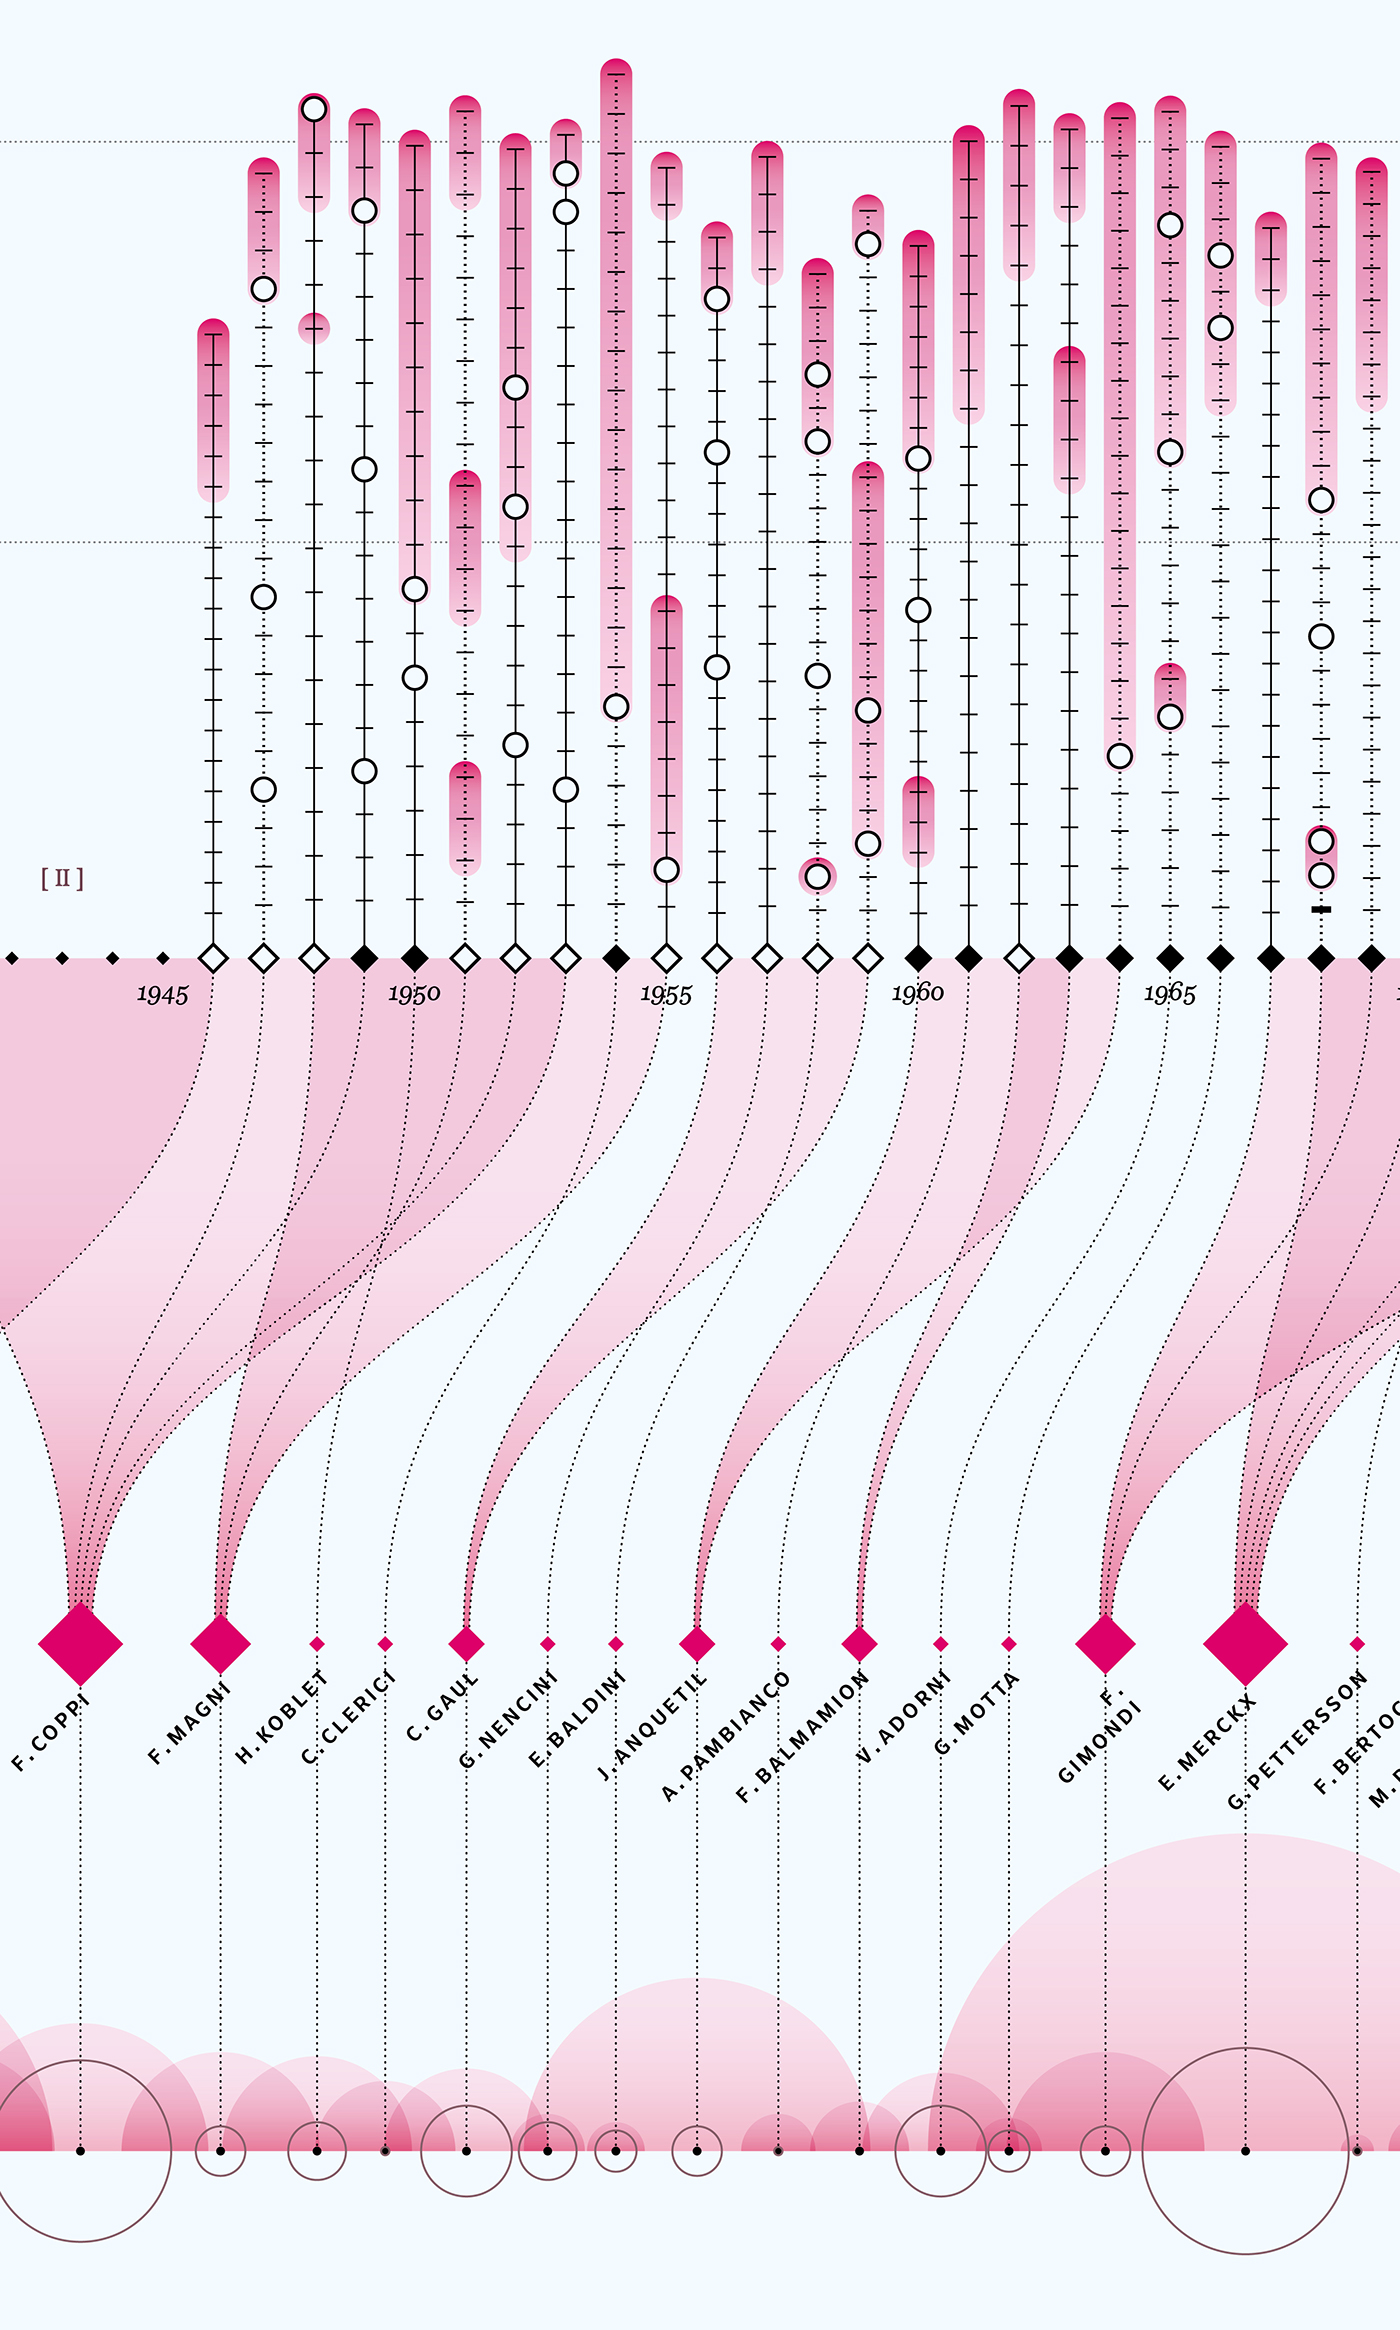 Giro Italy pink cycle race dataviz milano monza Data visual data